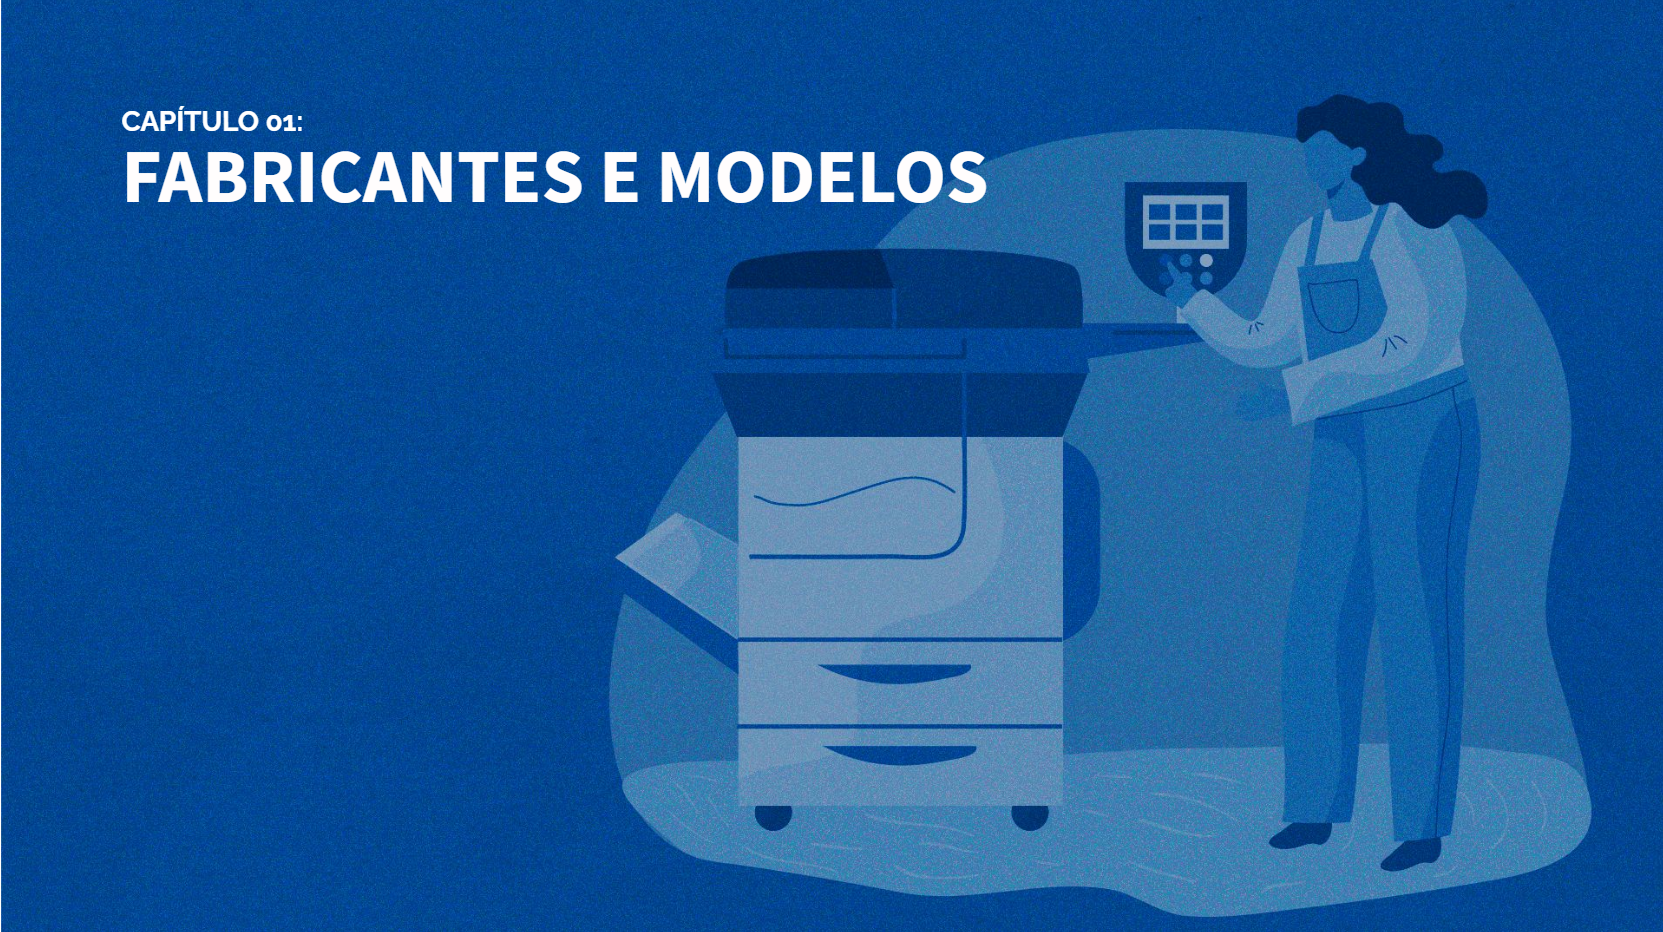 Capa do Capítulo 01: Fabricantes e Modelos, do Dossiê do Outsourcing de Impressão 2022-2023.